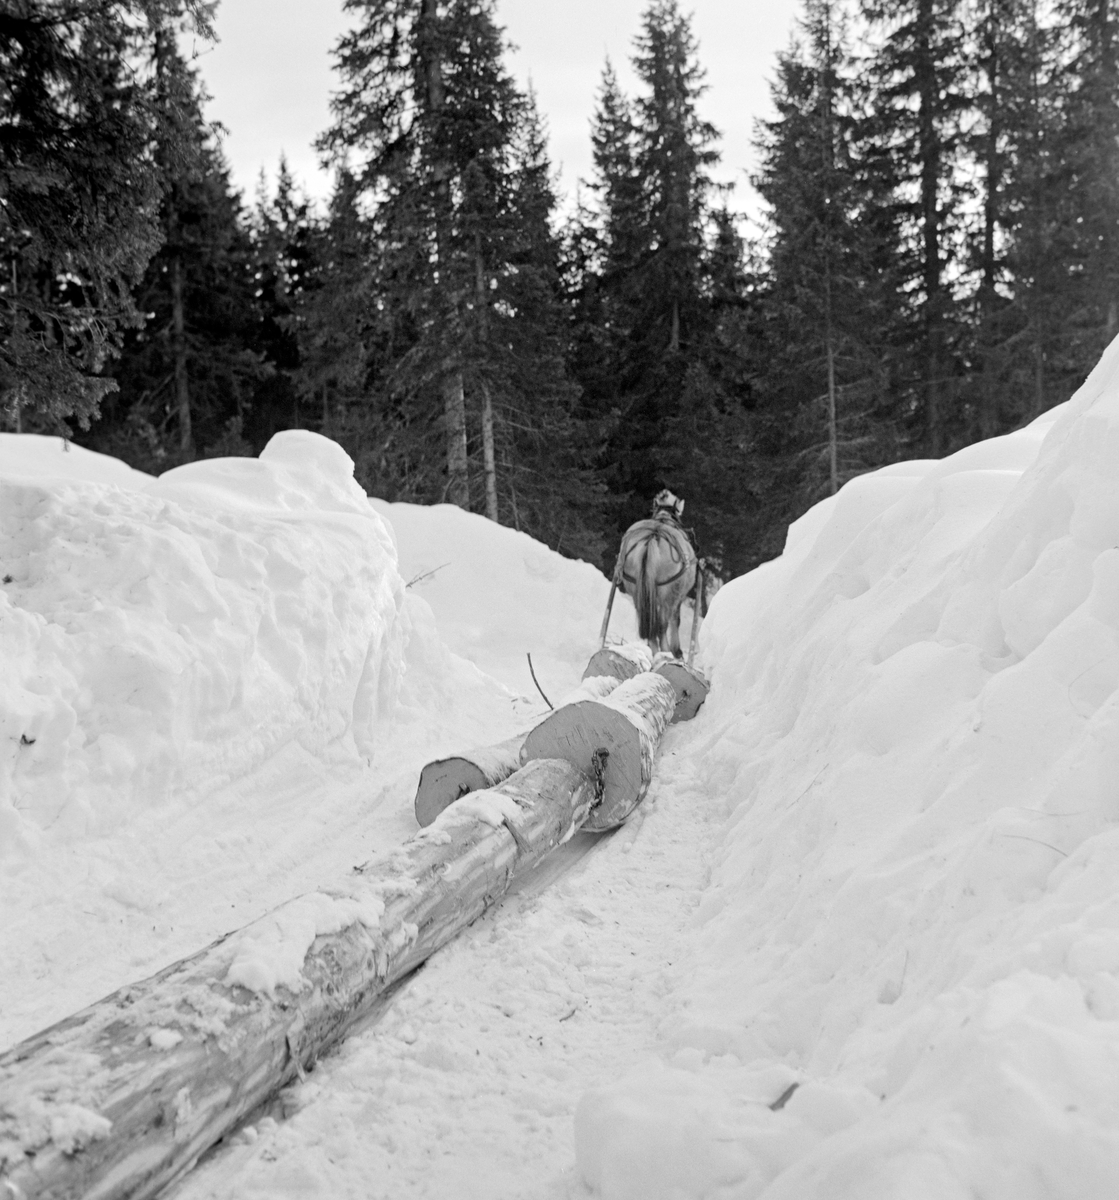 Hankekjøring med hest i Vestre Gausdal i Oppland vinteren 1967.  Fotografiet er tatt fra en vinterveg kjørekarene hadde måkt og tråkket opp i snøen.  I vegbanen ser vi den fremre delen av ei hankevending.  Den besto av parvis like lange, barkete tømmerstokker som var kjedet sammen.  Bindeleddene var såkalte «baklekkjer» - kjettingstumper med «pjekser» (små bleier) i ytterendene.  Hankevendingene ble trukket av en hest med en stutting i front.  Tømmerpartiene som skulle trekkes ned lia på denne måten kunne bli forholdsvis store.  I forbindelse med Norsk Skogbruksmuseums dokumentasjon av hankekjøring i Vestre Gausdal vinteren 1967 ble3 det opplyst at «... Omtren tri tølter [tylfter] er ei normal vending, men under gode førhold har det vori kjørt oppte' hundre stokker».